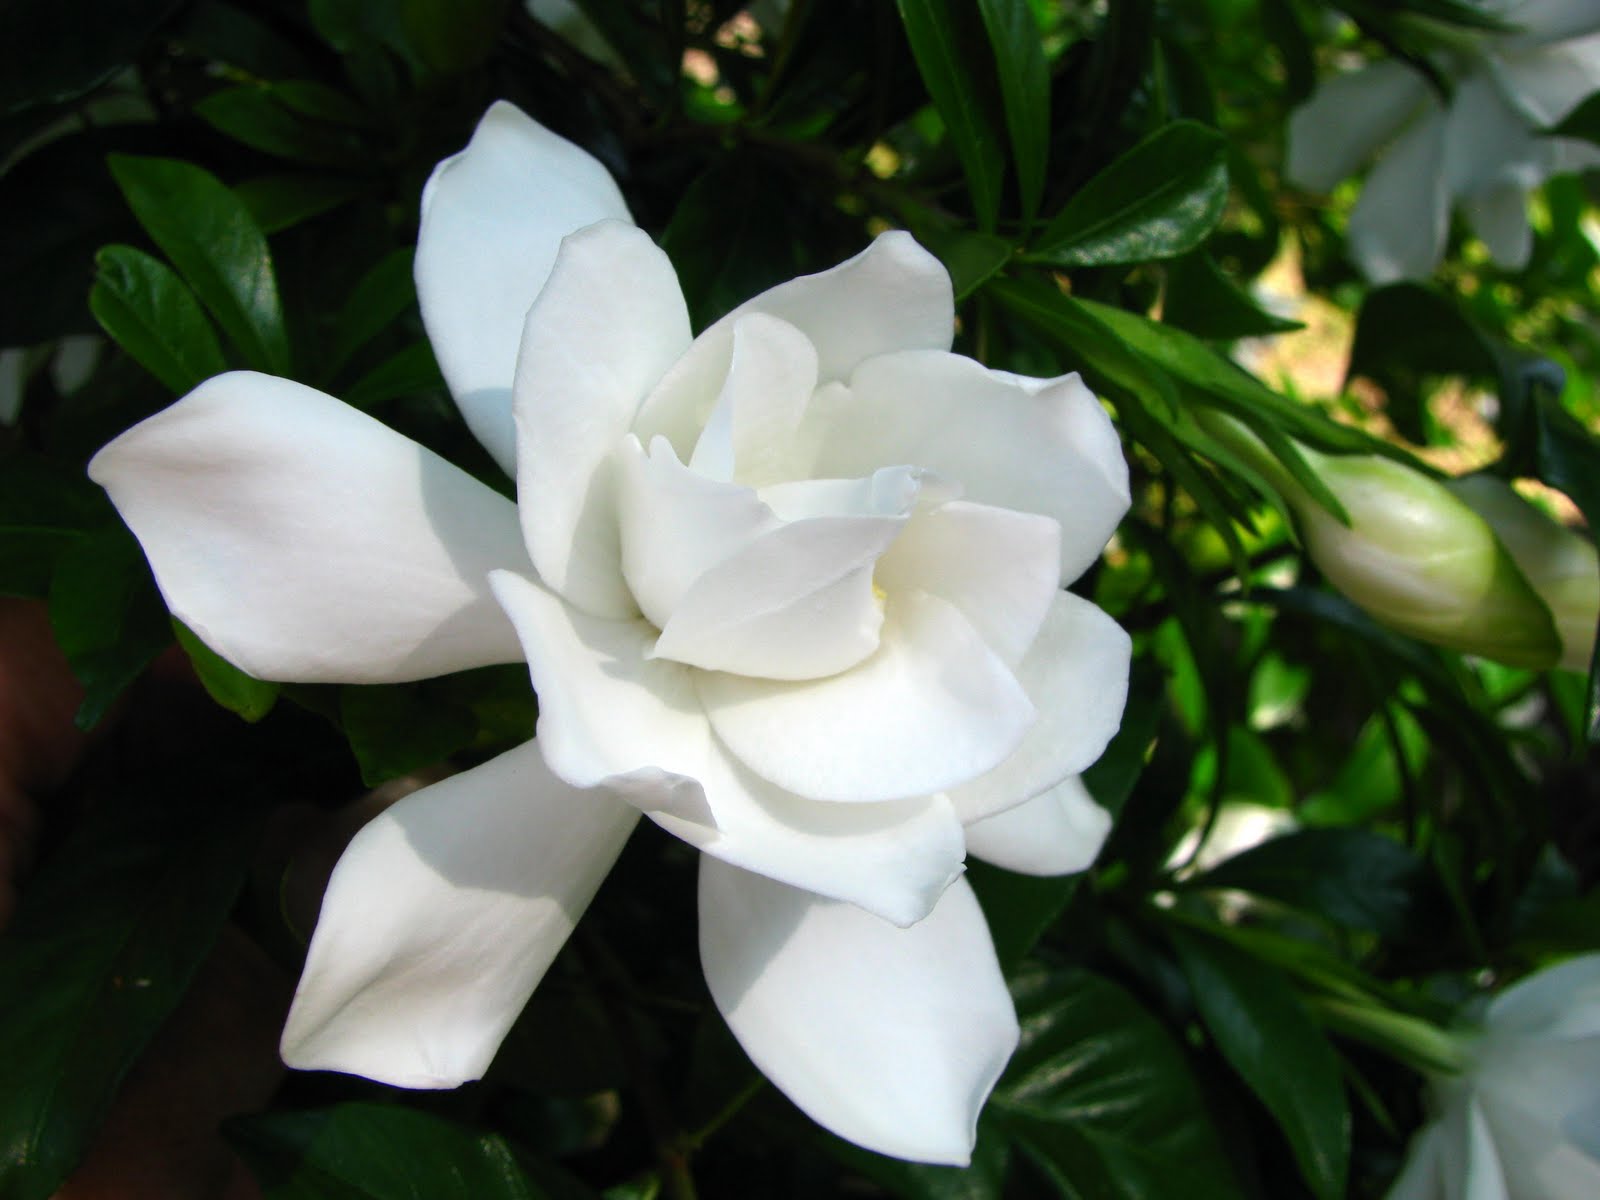 gardenia tapete,blume,blühende pflanze,weiß,blütenblatt,gardenie